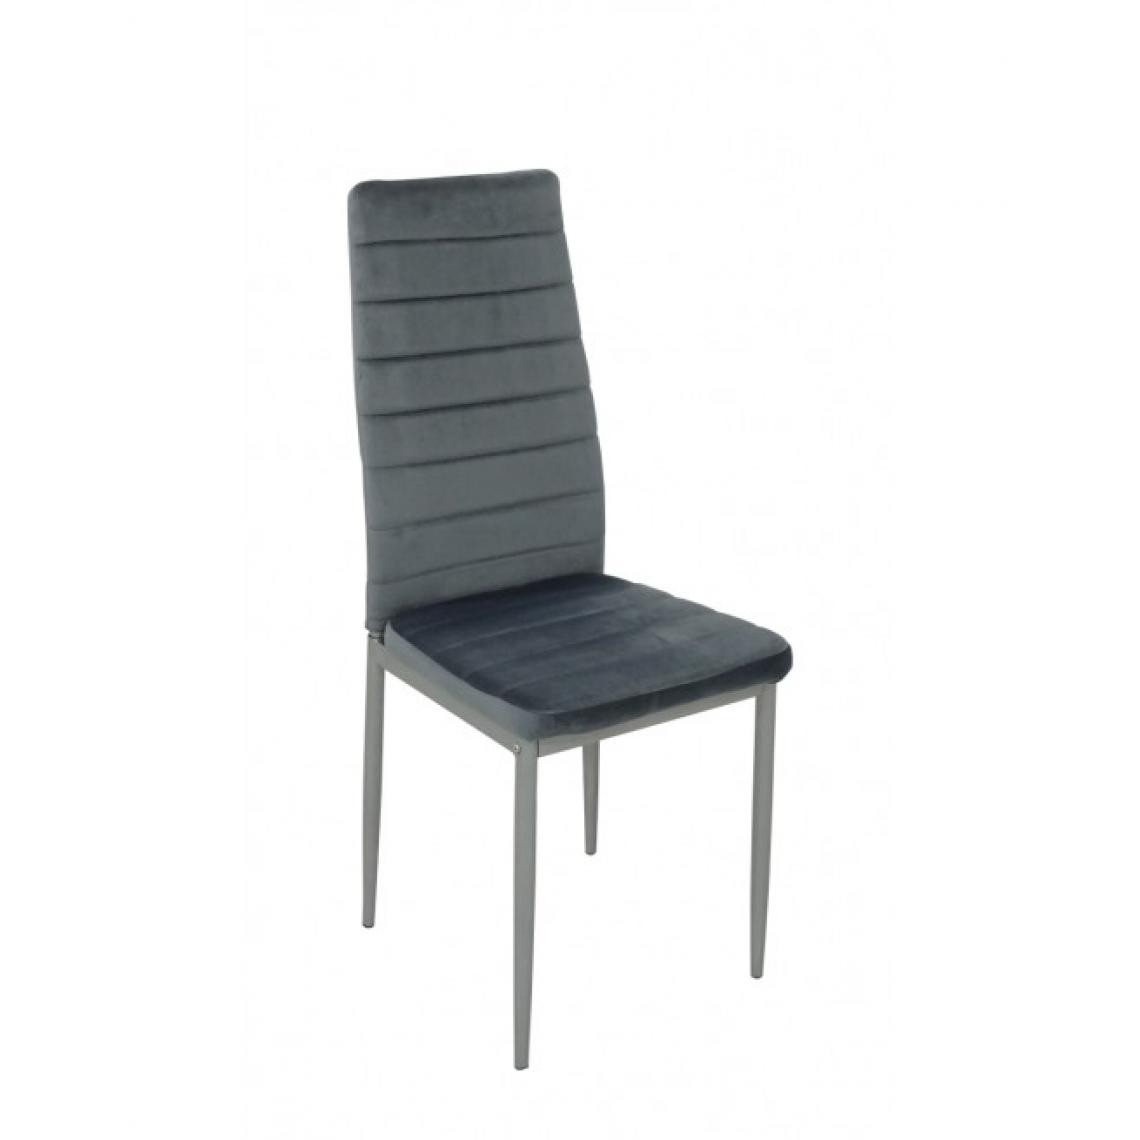 Hucoco - VELA - Chaise rembourrée en velours style moderne salle à manger - 40x40x98 cm - Cadre en métal - Gris - Chaises